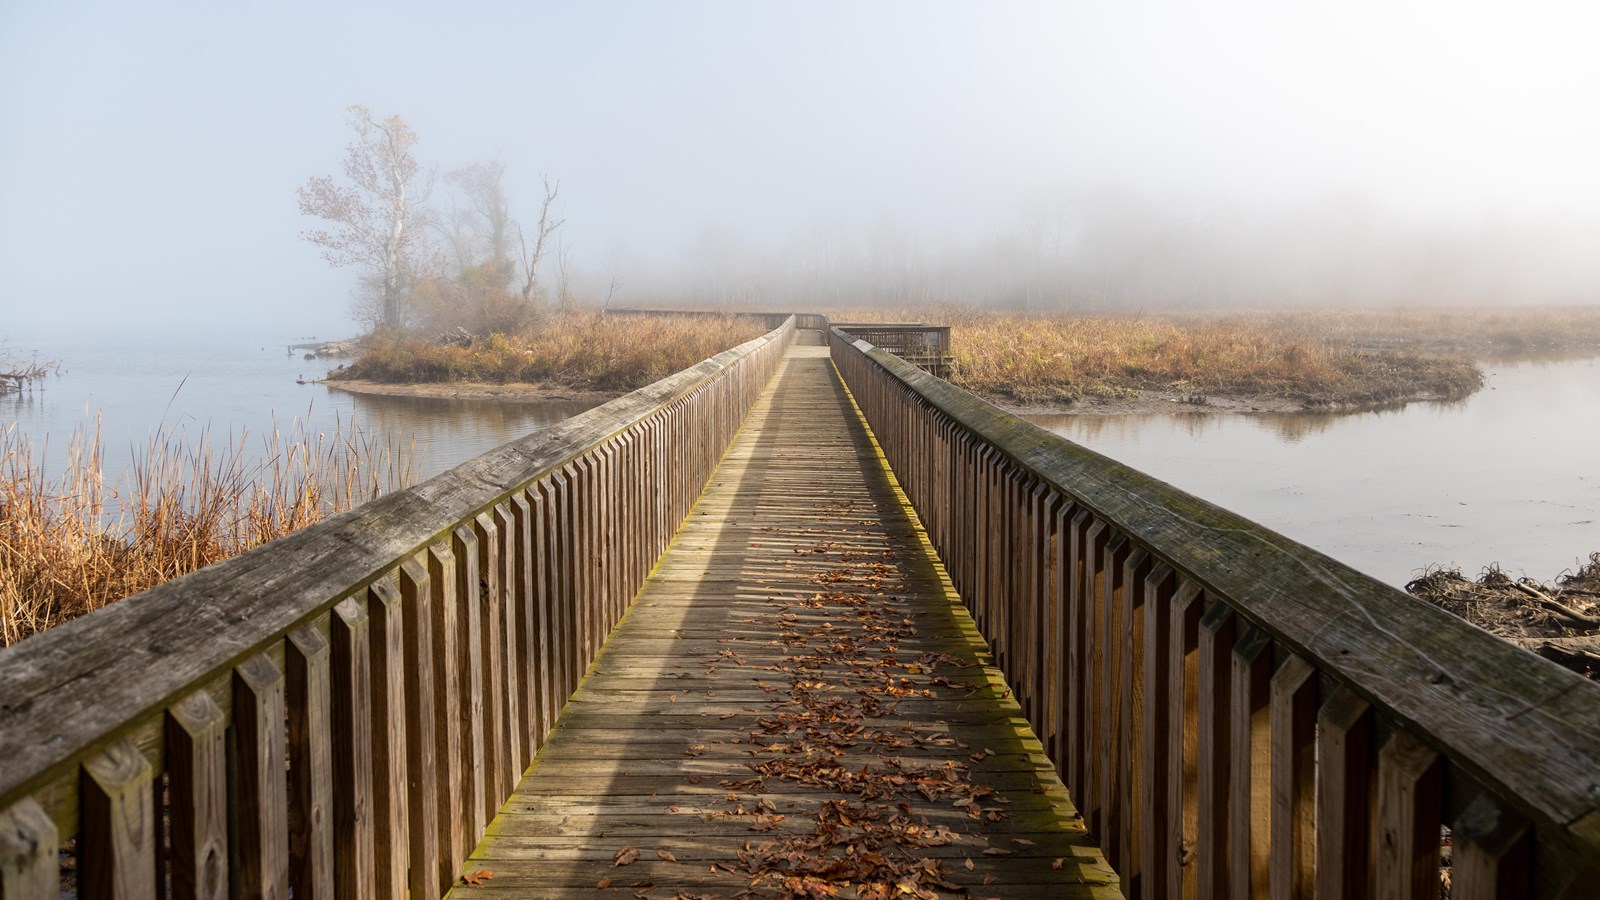 A wooden boardwalk extends through a lush green marsh